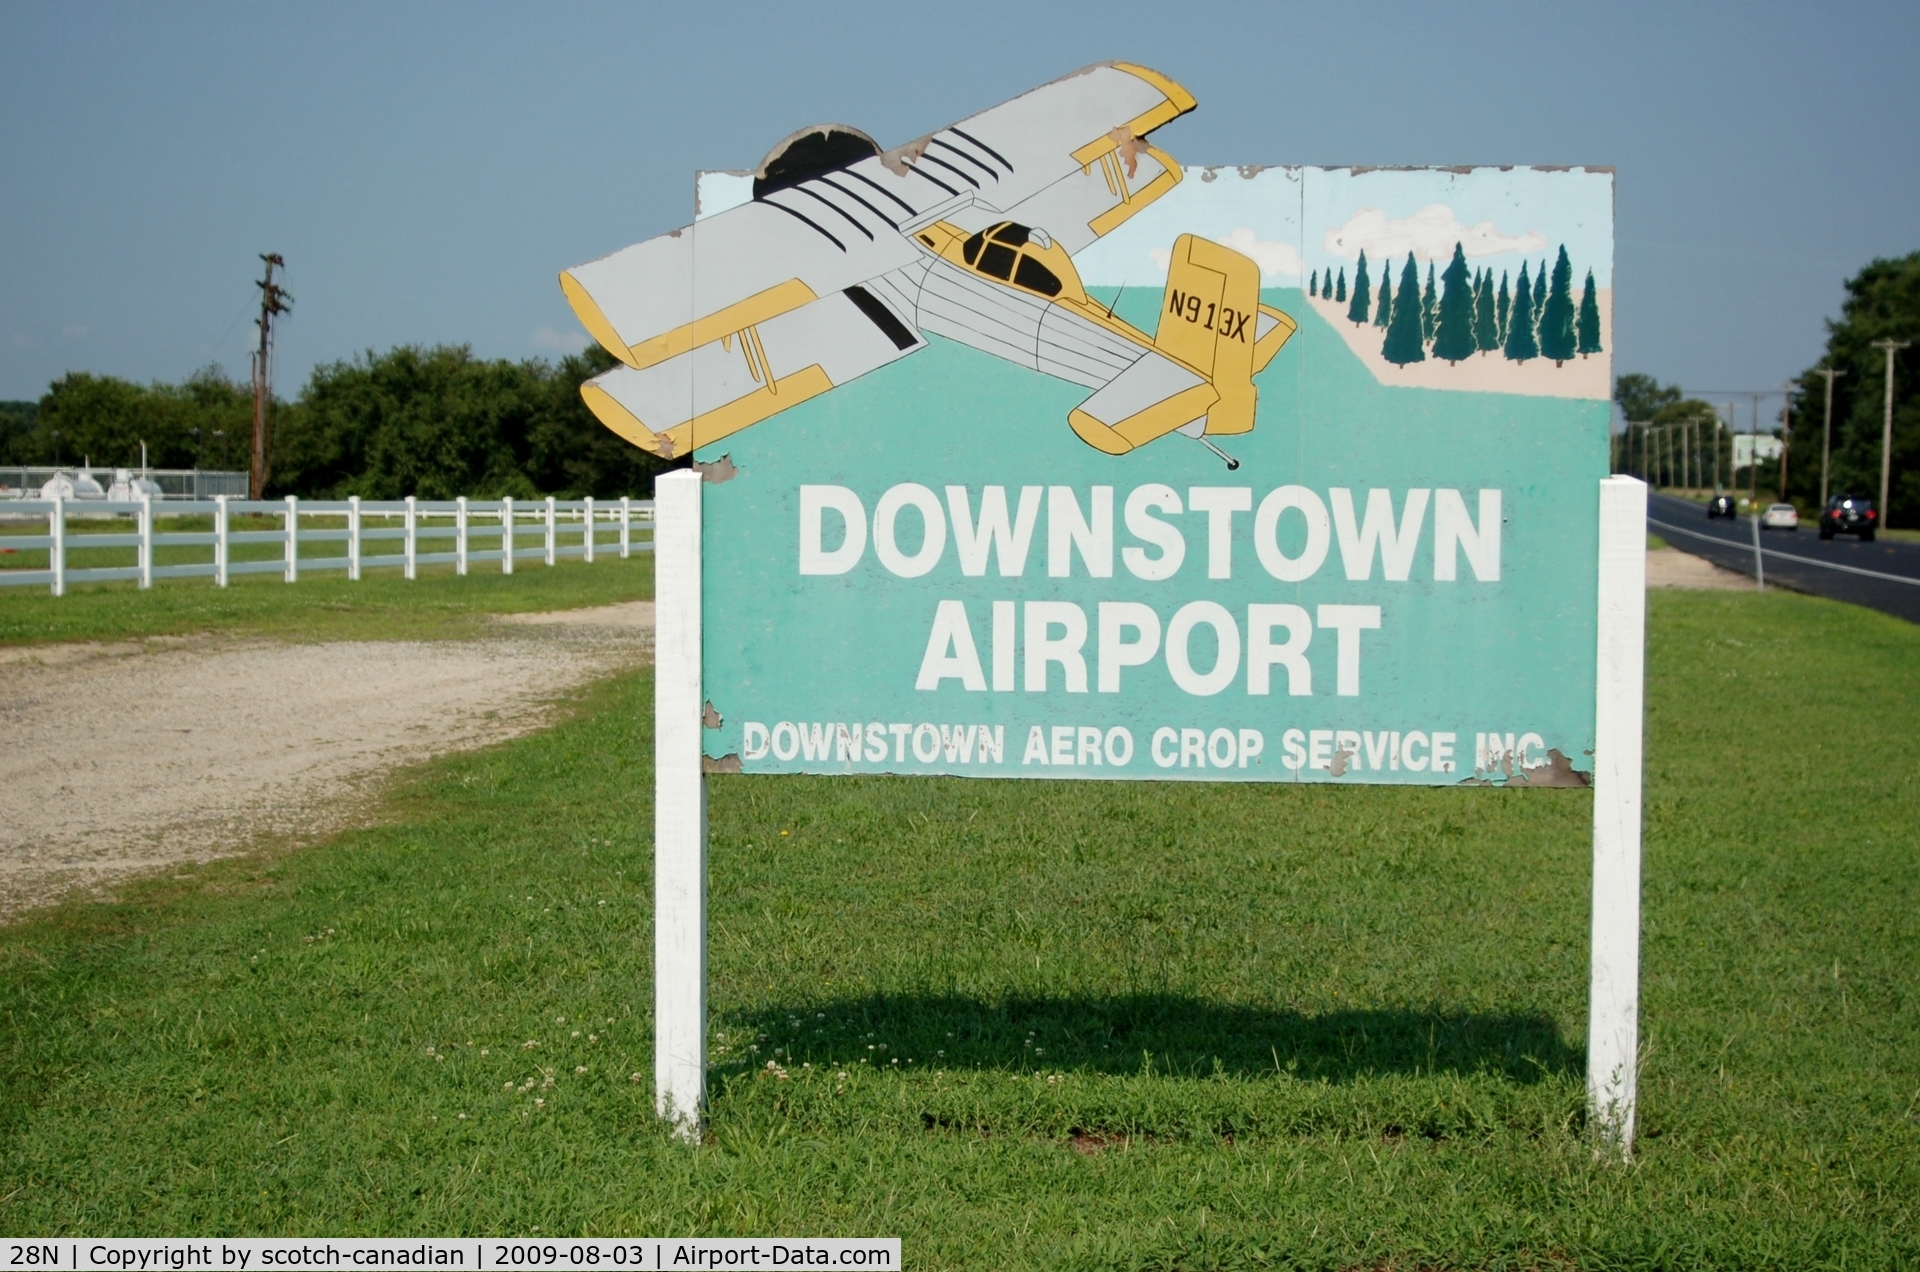 Vineland-downstown Airport (28N) - Sign at Vineland-Downstown Airport, Vineland, NJ